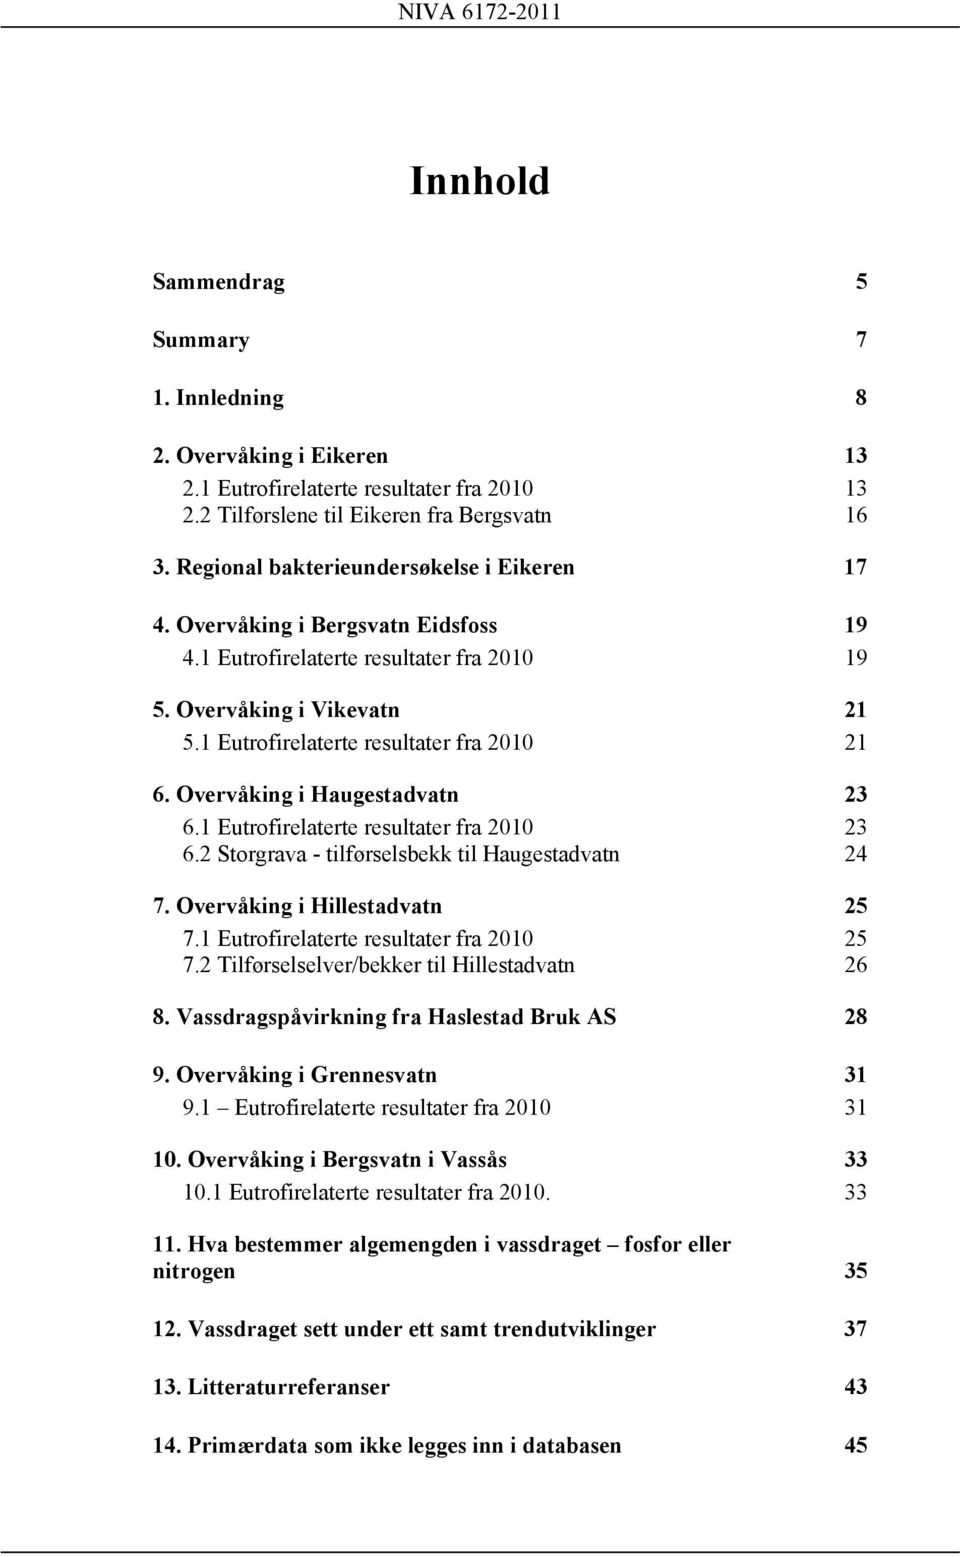 Overvåking i Haugestadvatn 23 6.1 Eutrofirelaterte resultater fra 2010 23 6.2 Storgrava - tilførselsbekk til Haugestadvatn 24 7. Overvåking i Hillestadvatn 25 7.